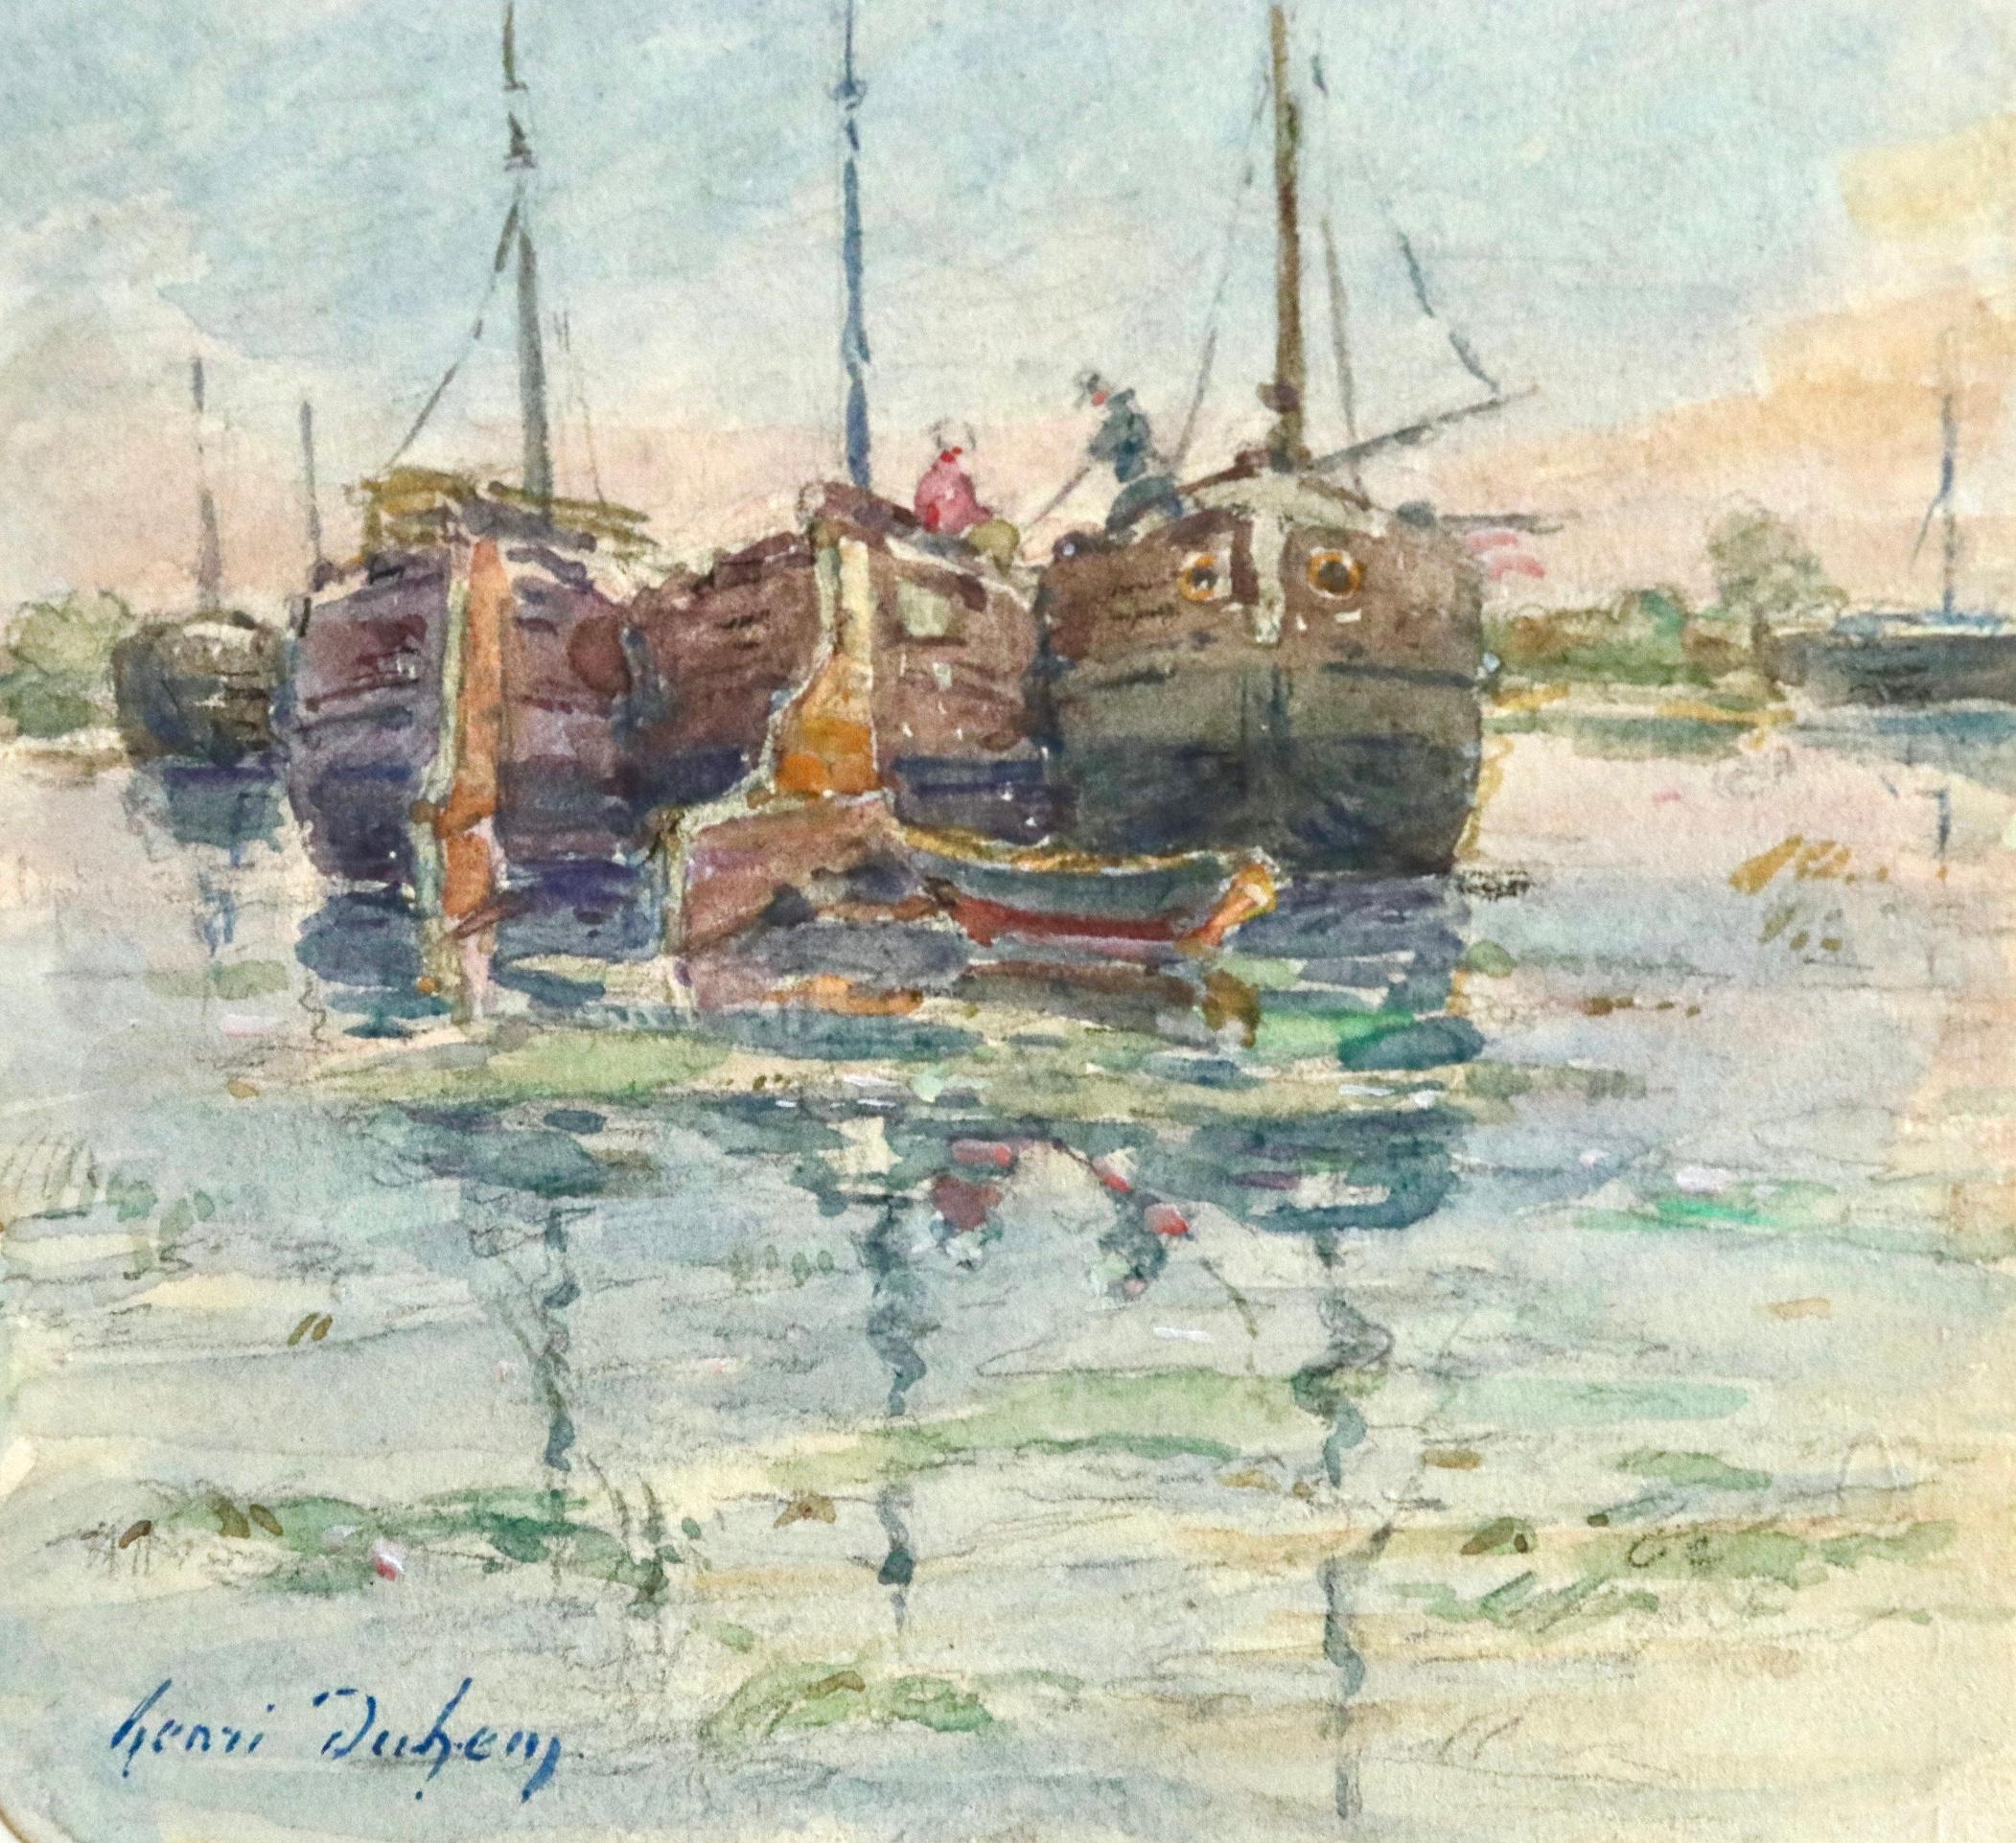 Sur les Bateaux - 19th Century Watercolor, Boats on River Landscape by H Duhem - Gray Landscape Painting by Henri Duhem